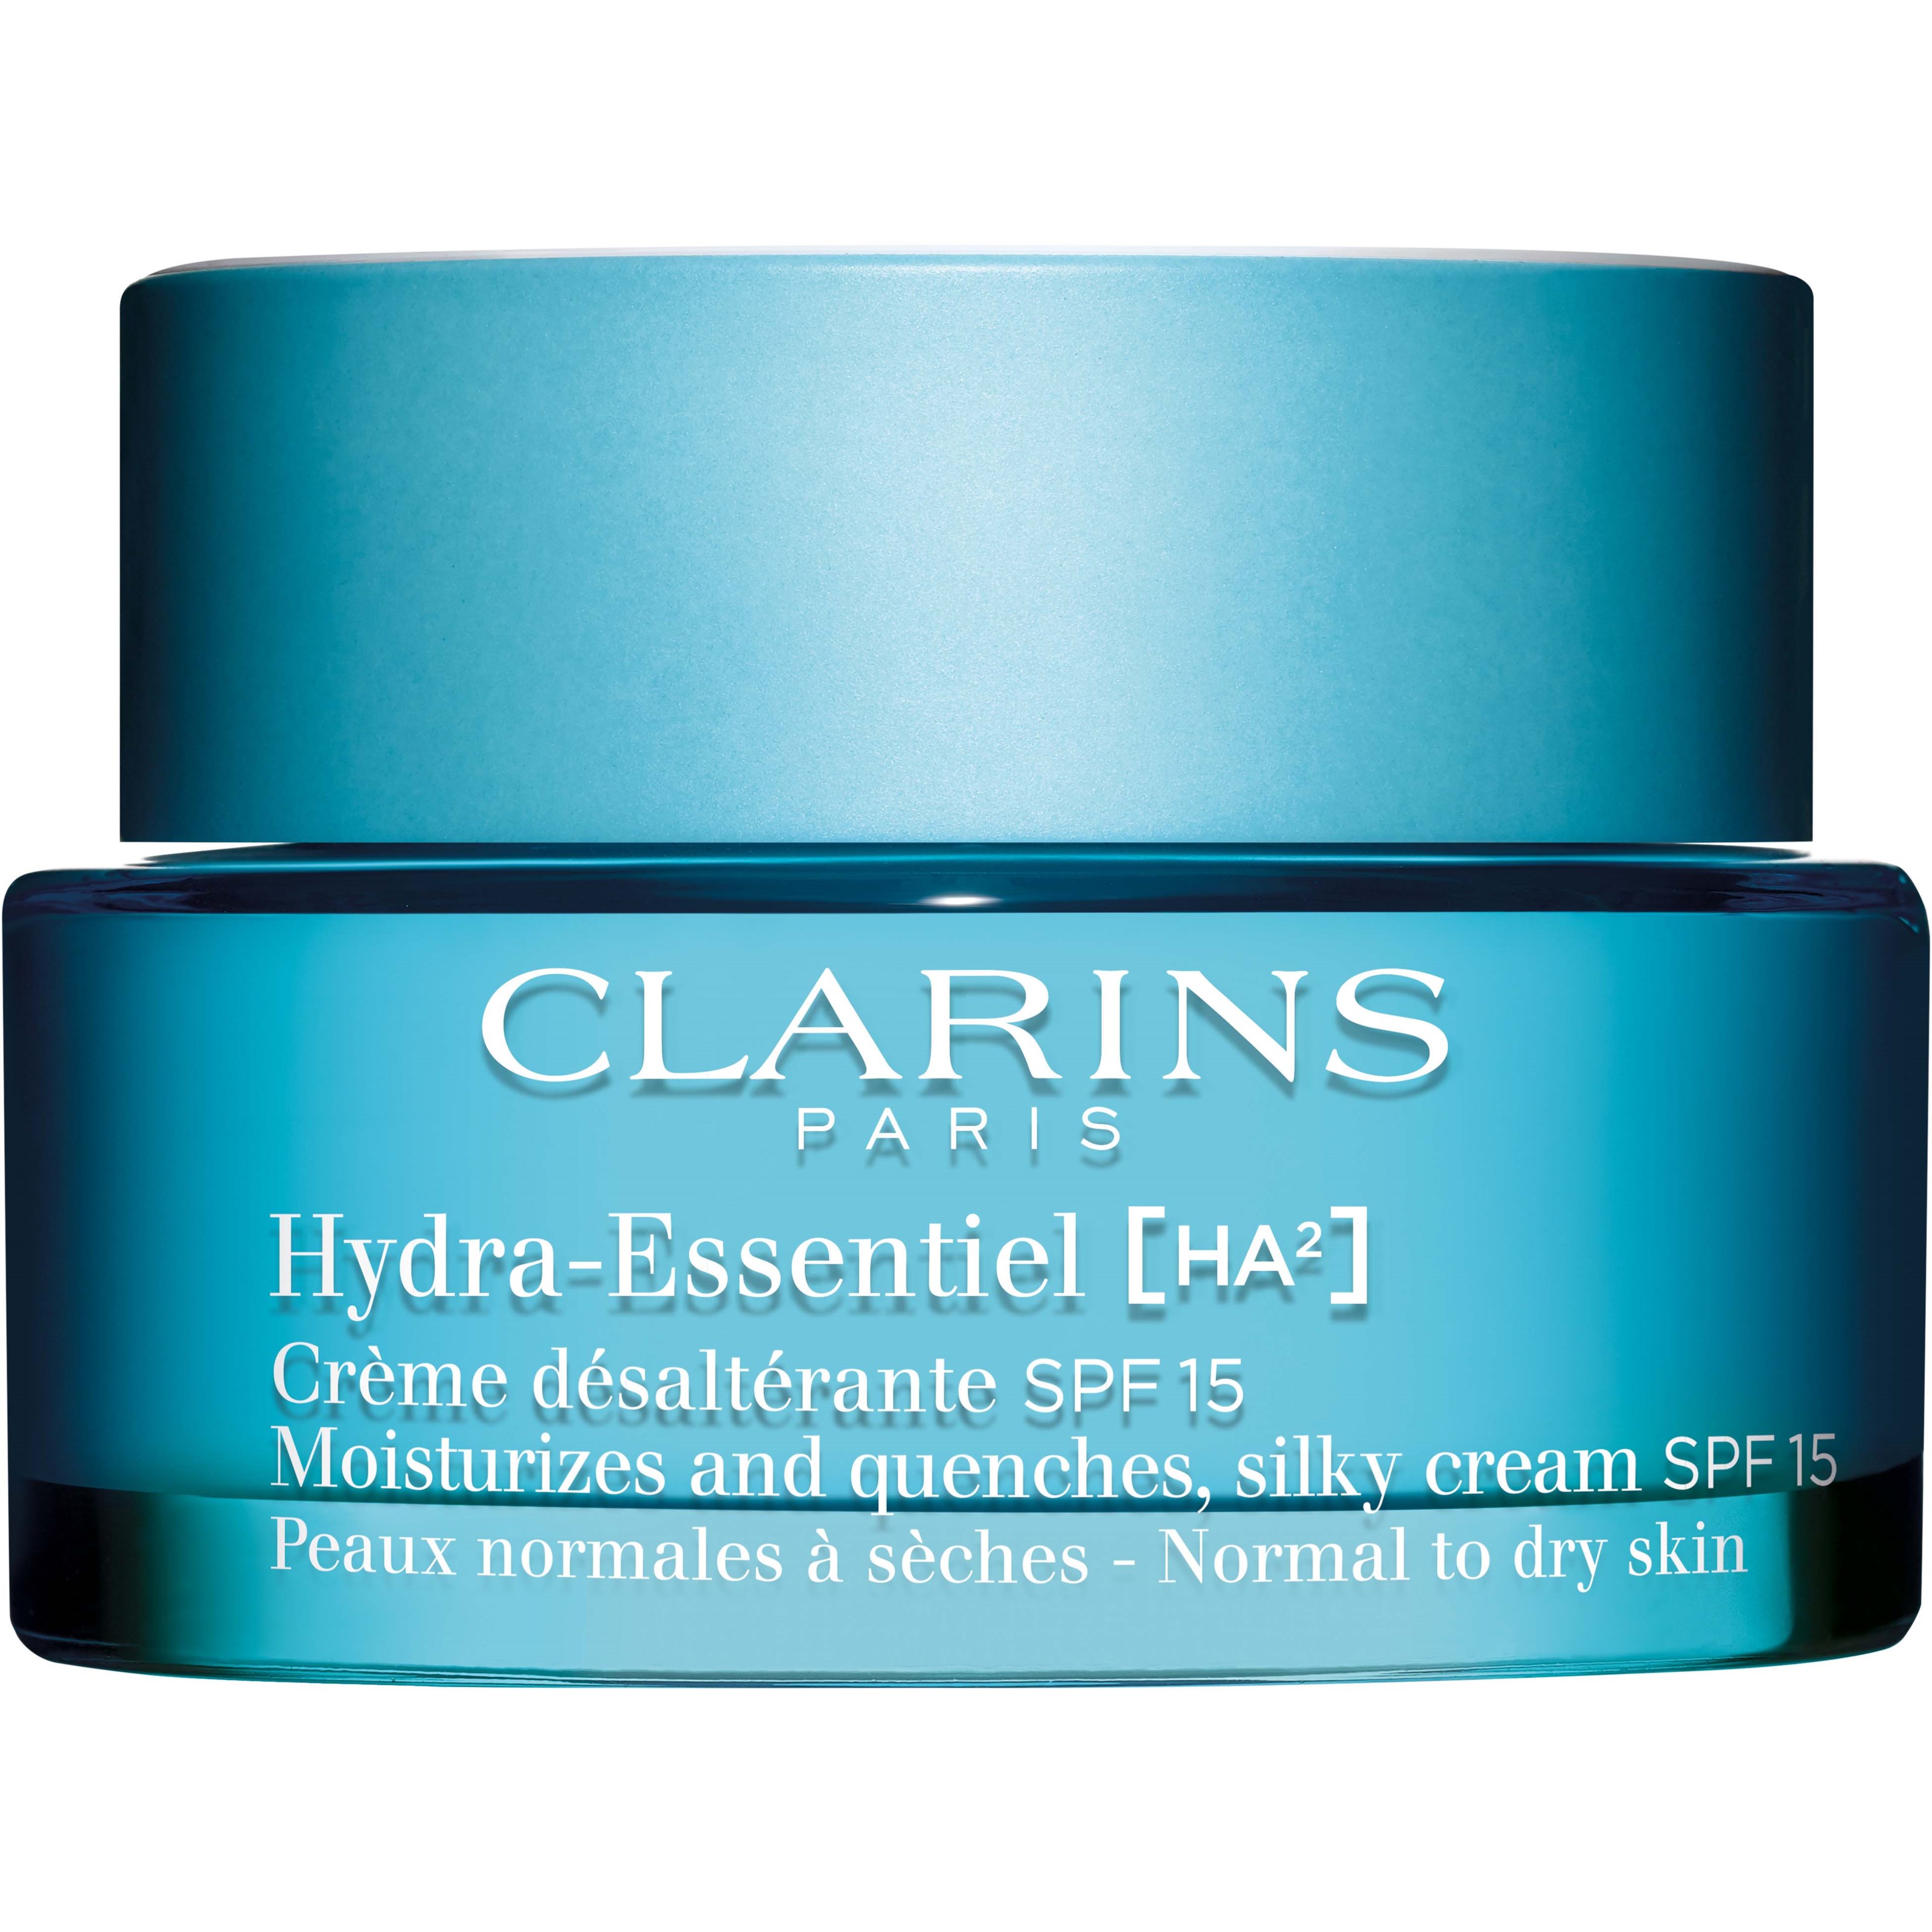 Clarins Hydra-Essentiel Moisturizes and Quenches, Silky Cream SPF 15 5